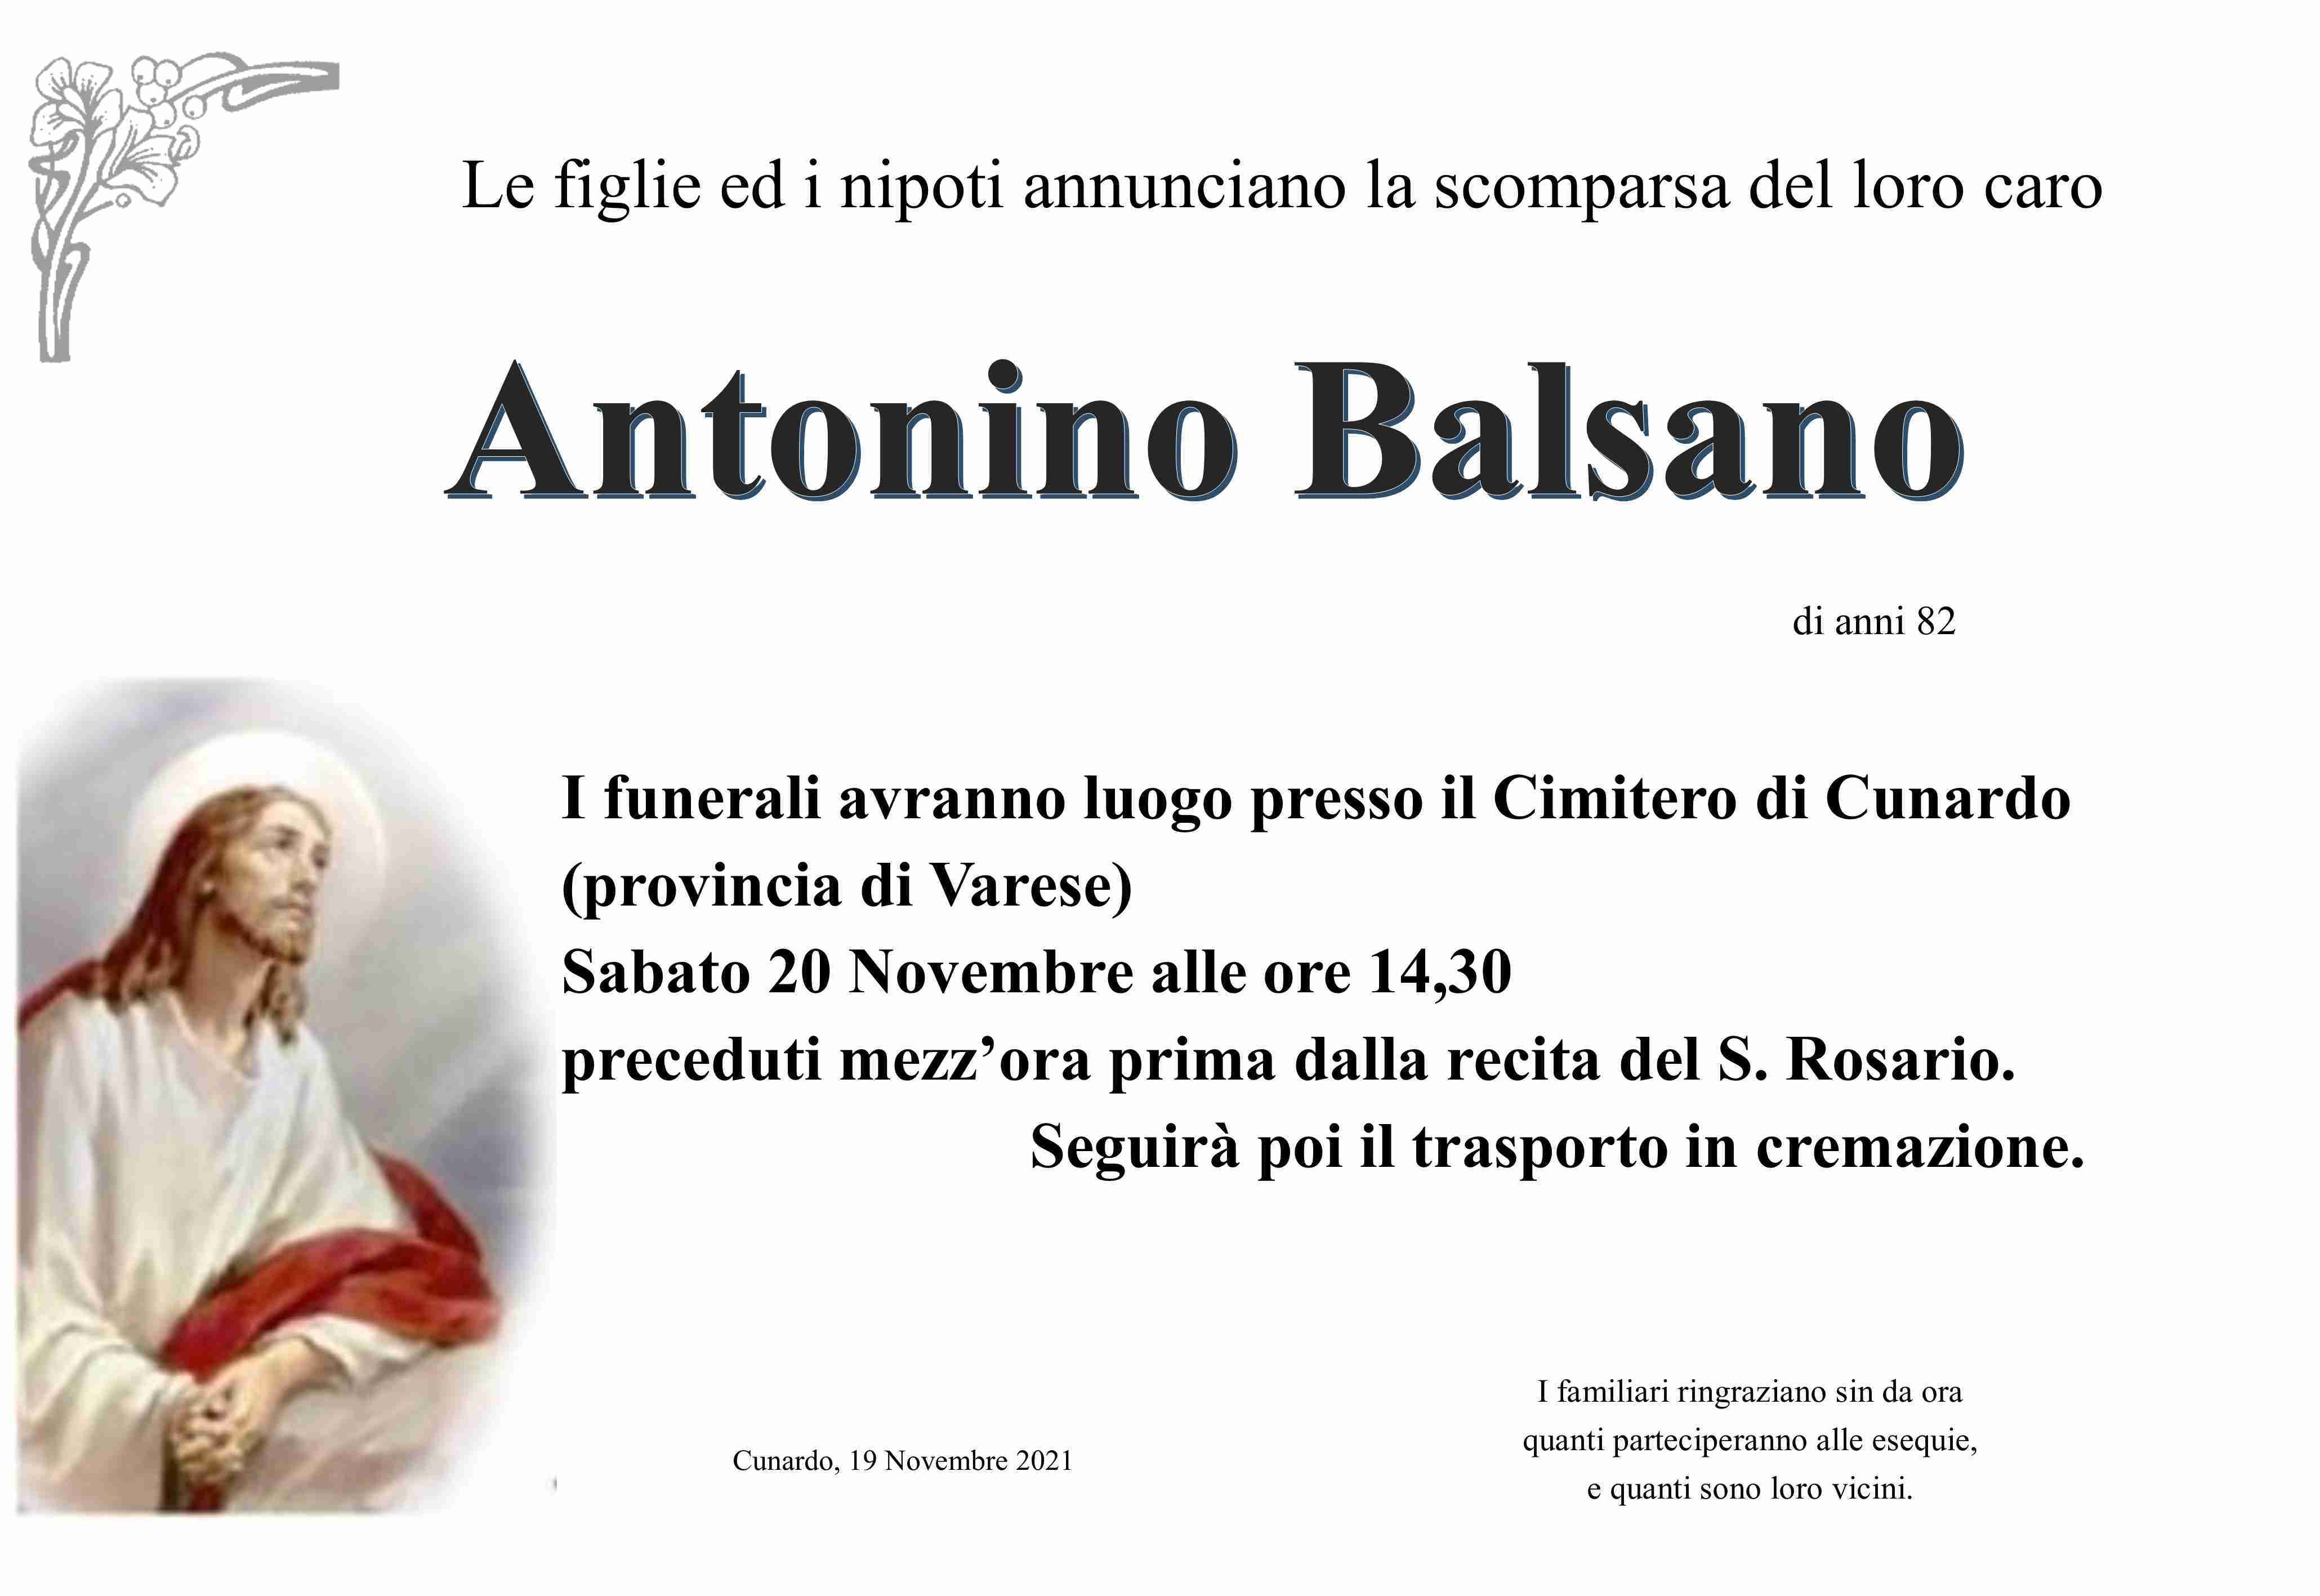 Antonino Balsano